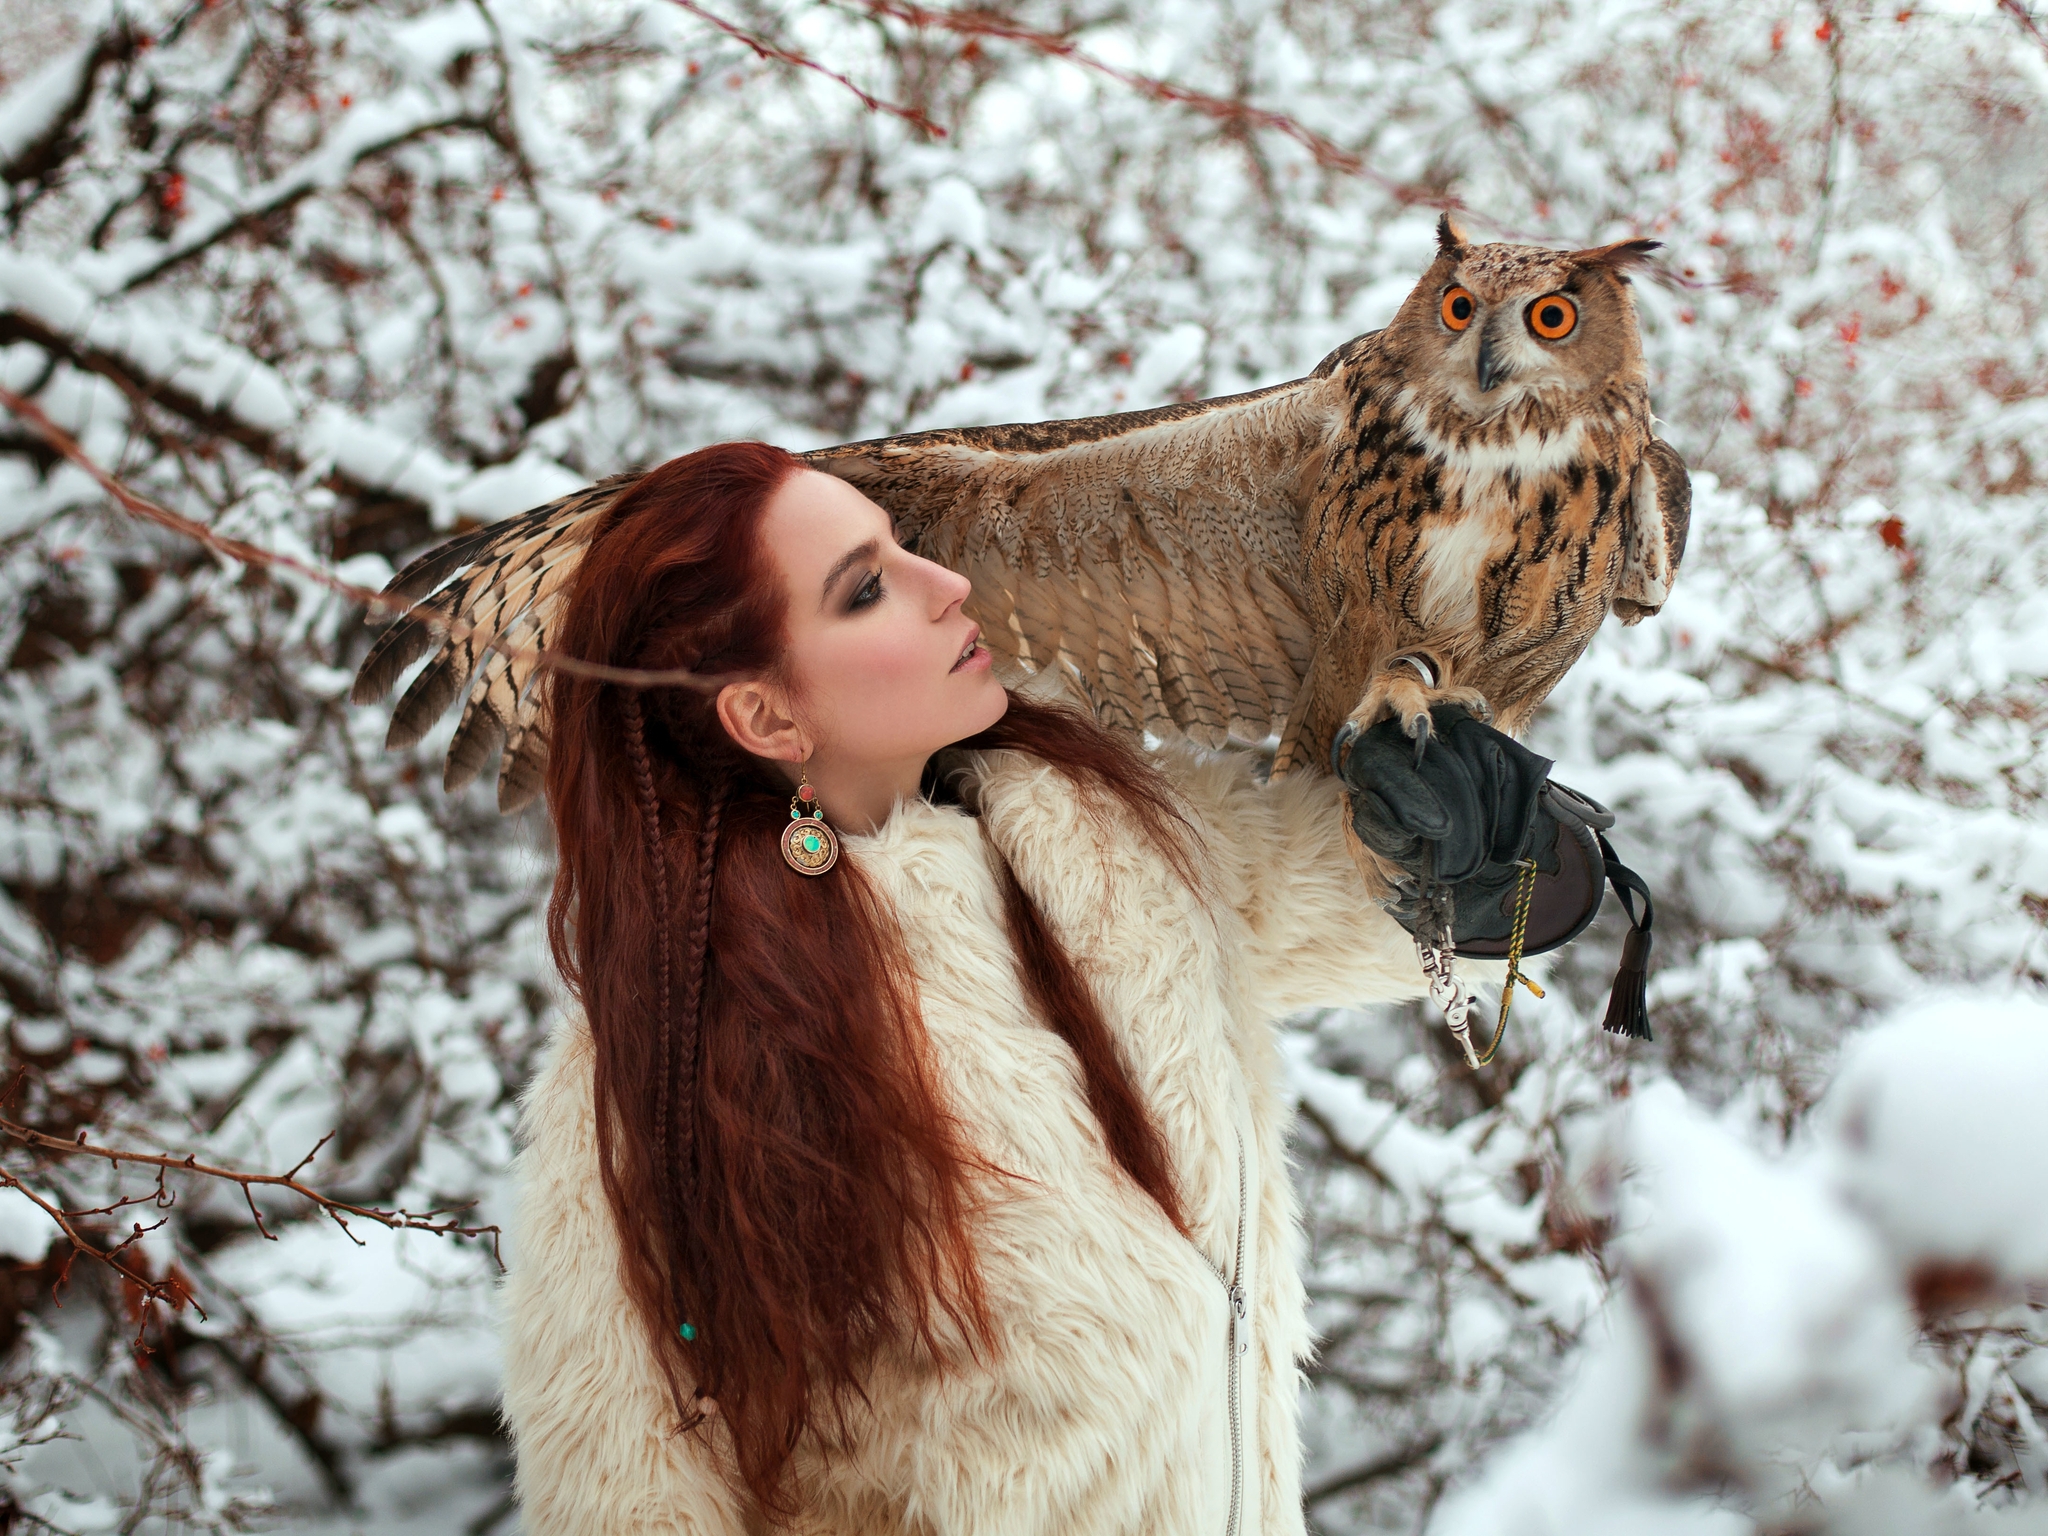 Картинка: Девушка, рыжеволосая, перчатка, птица, ушастая сова, филин, крыло, ветки, зима